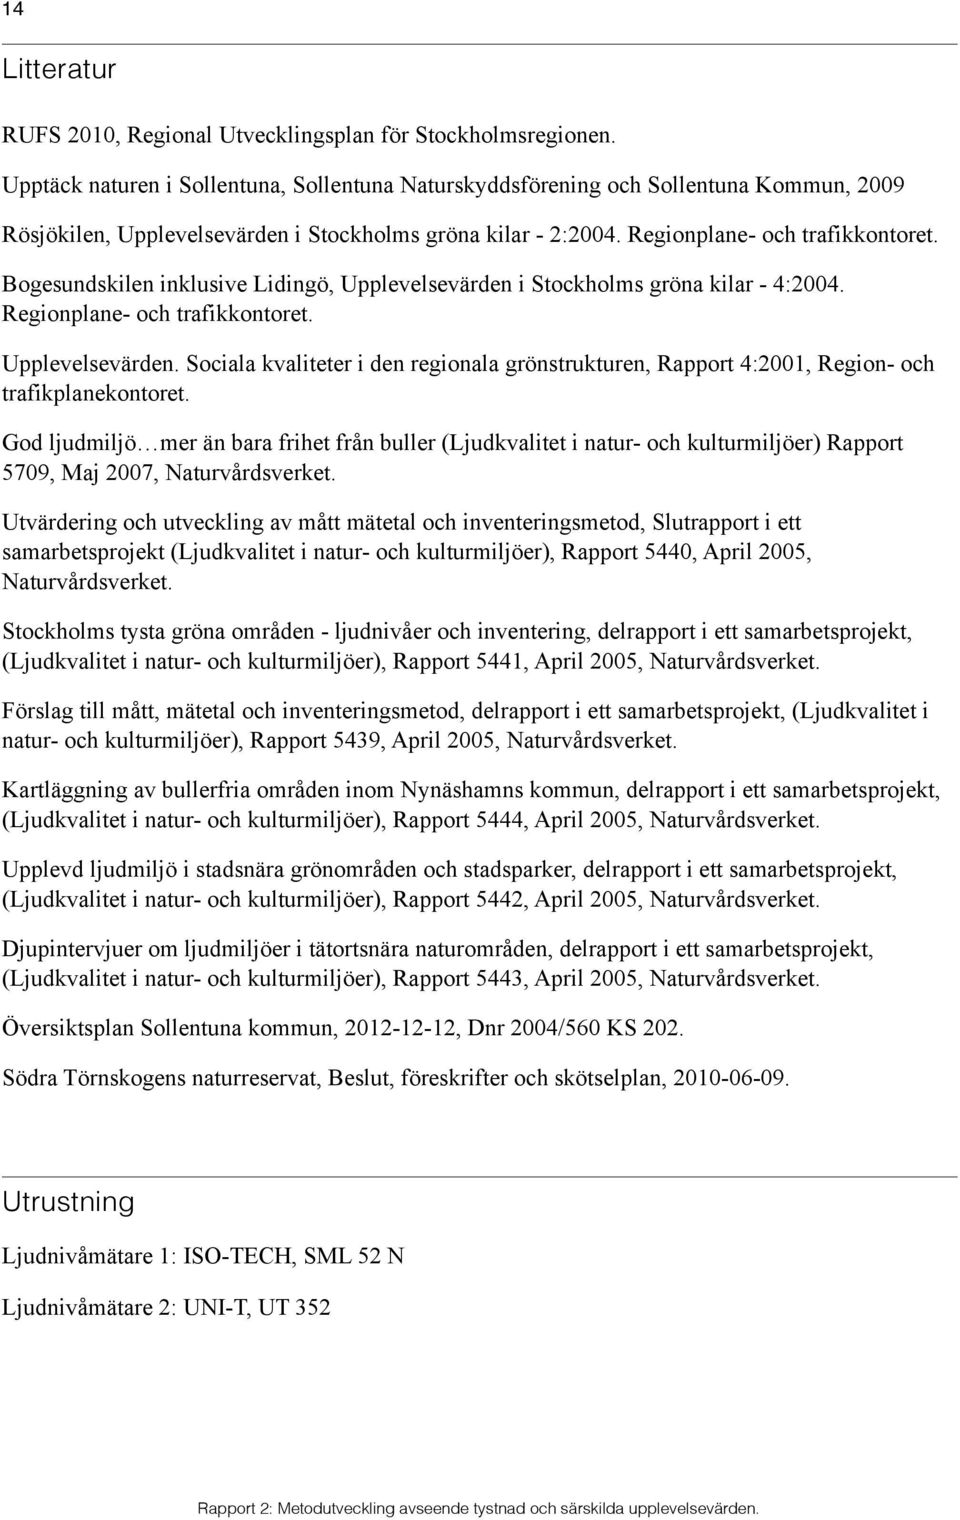 Bogesundskilen inklusive Lidingö, Upplevelsevärden i Stockholms gröna kilar - 4:2004. Regionplane- och trafikkontoret. Upplevelsevärden. Sociala kvaliteter i den regionala grönstrukturen, Rapport 4:2001, Region- och trafikplanekontoret.